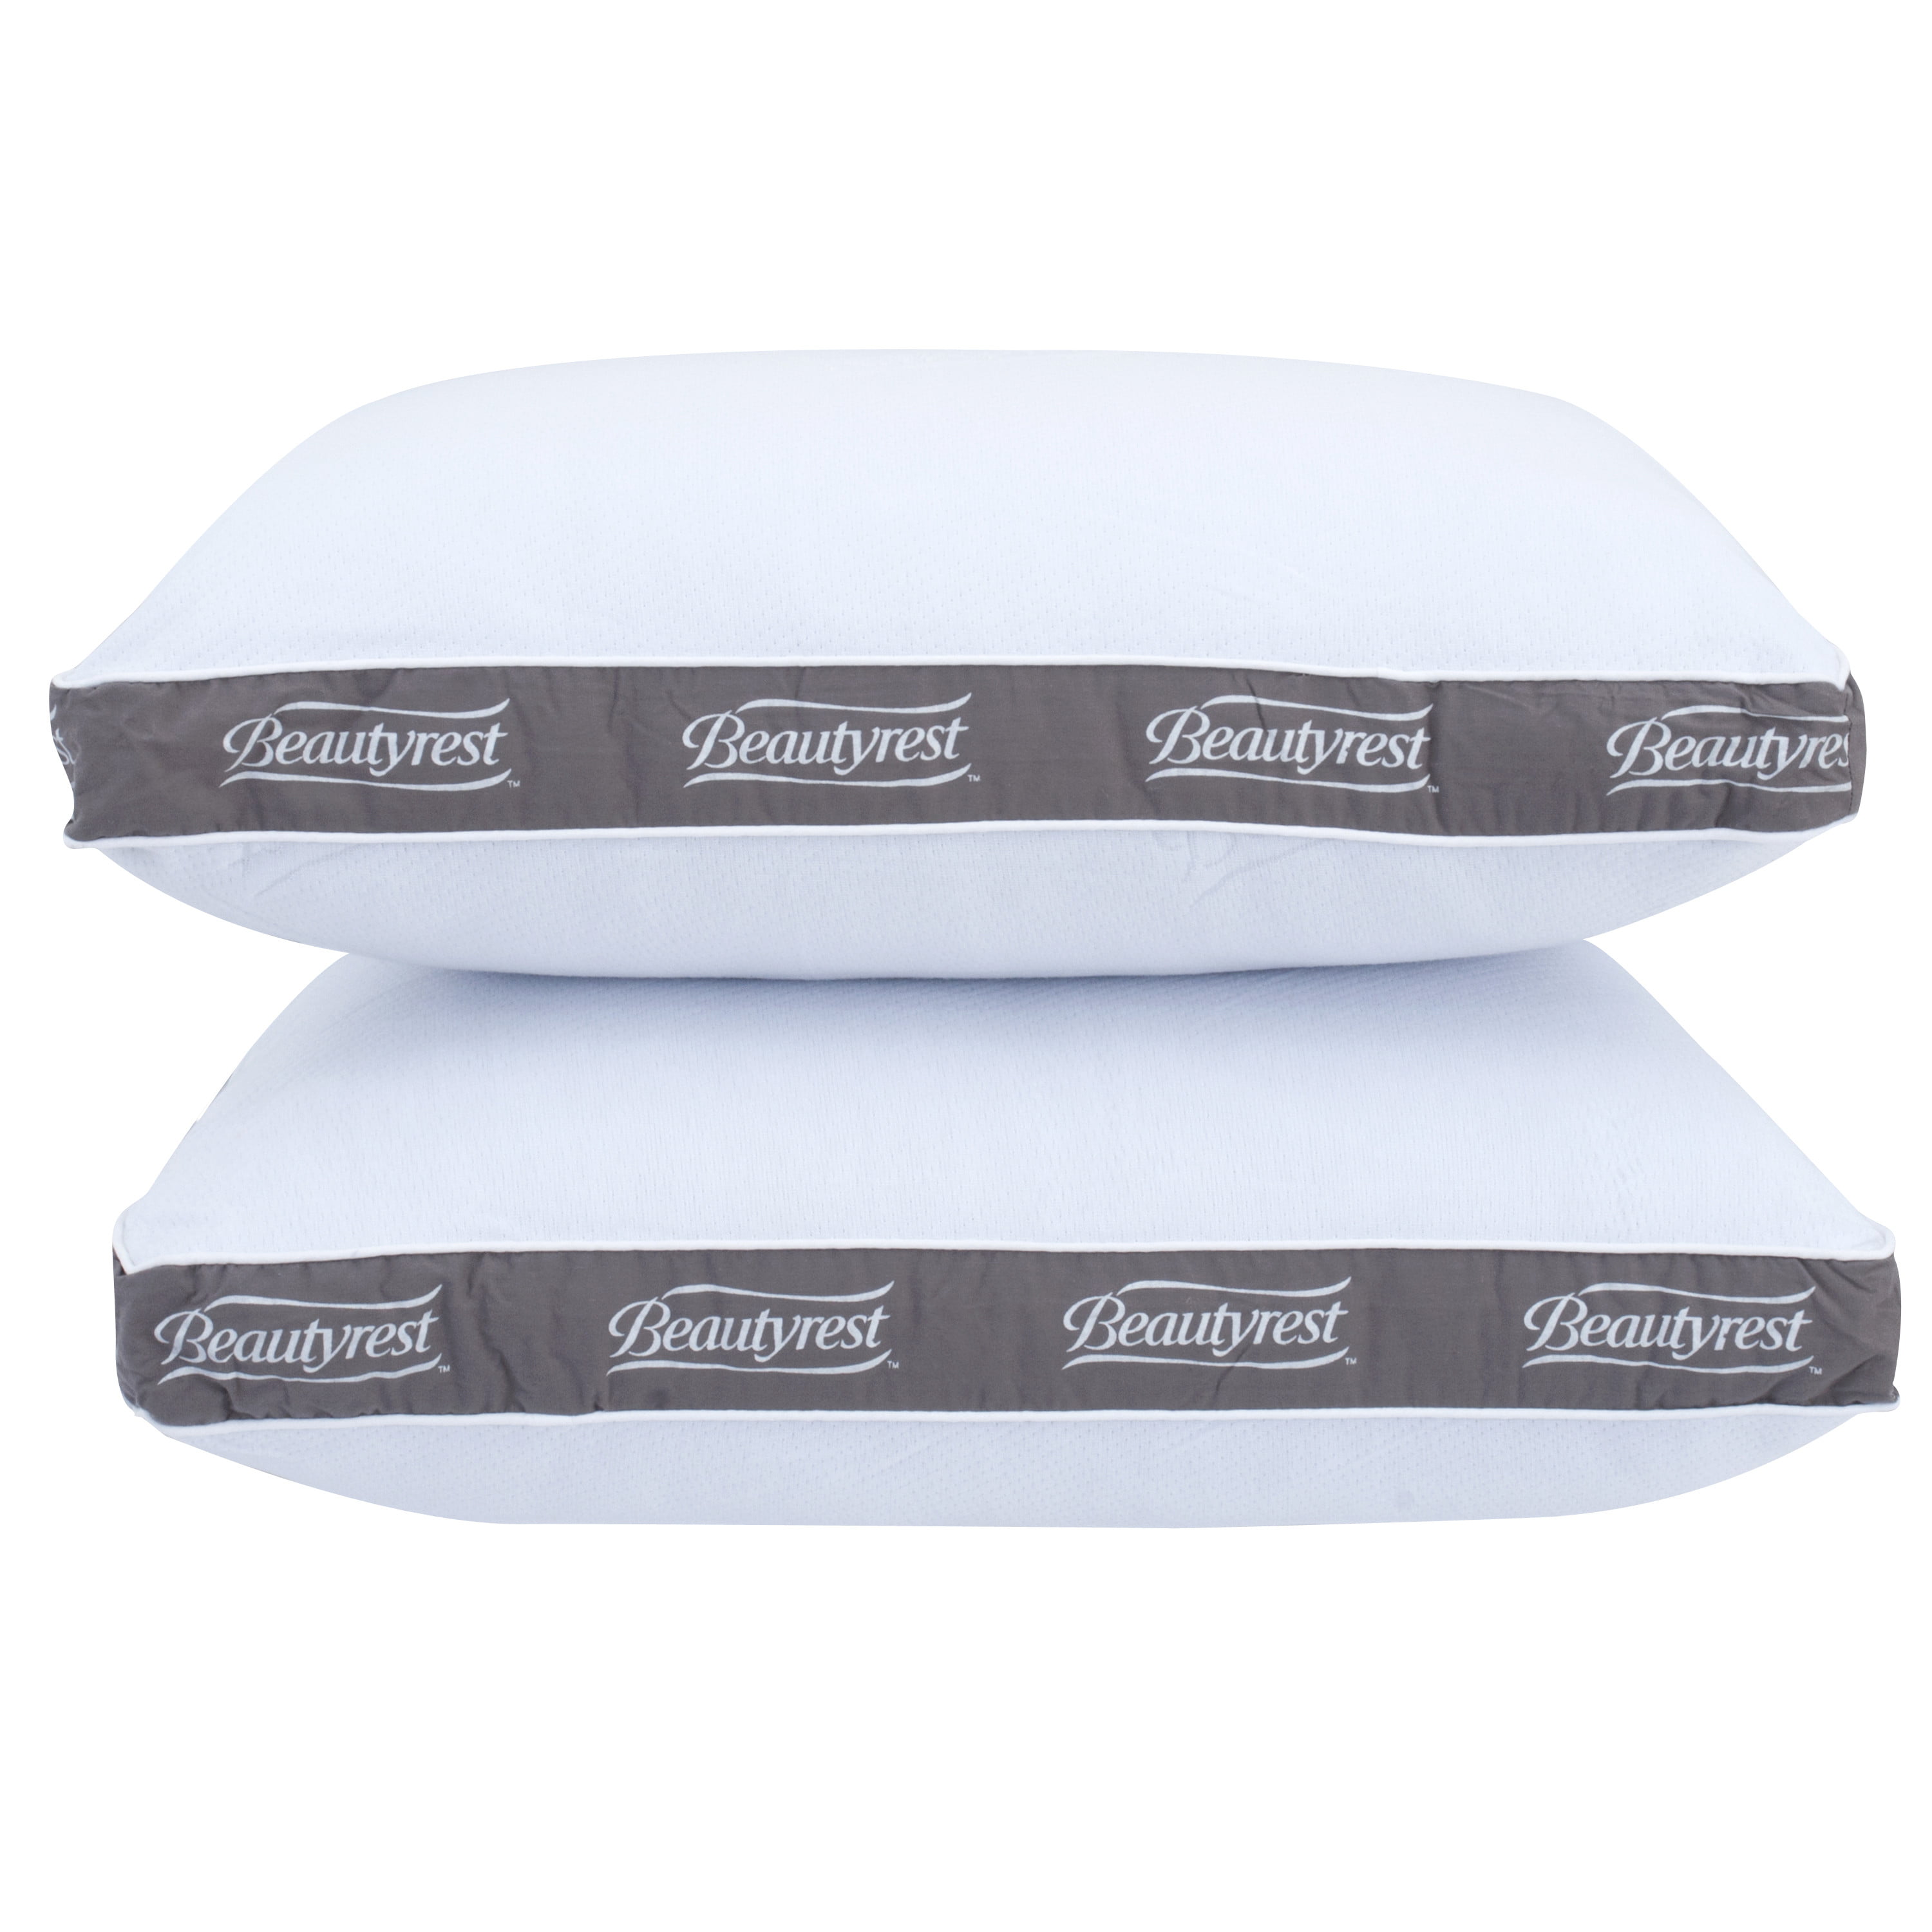 two beautyrest pillows 